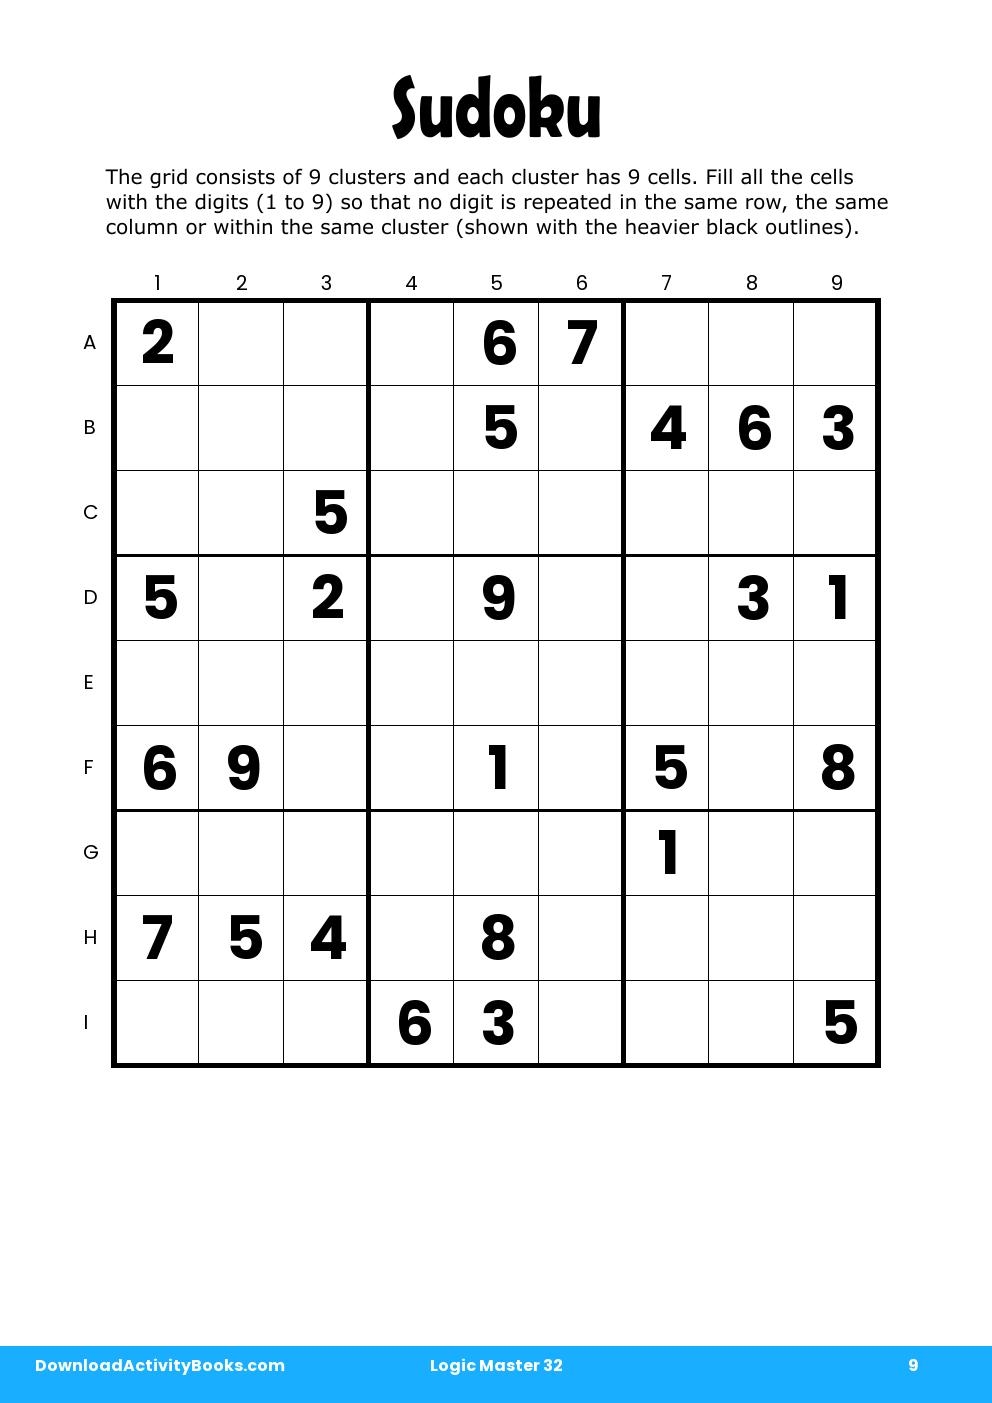 Sudoku in Logic Master 32